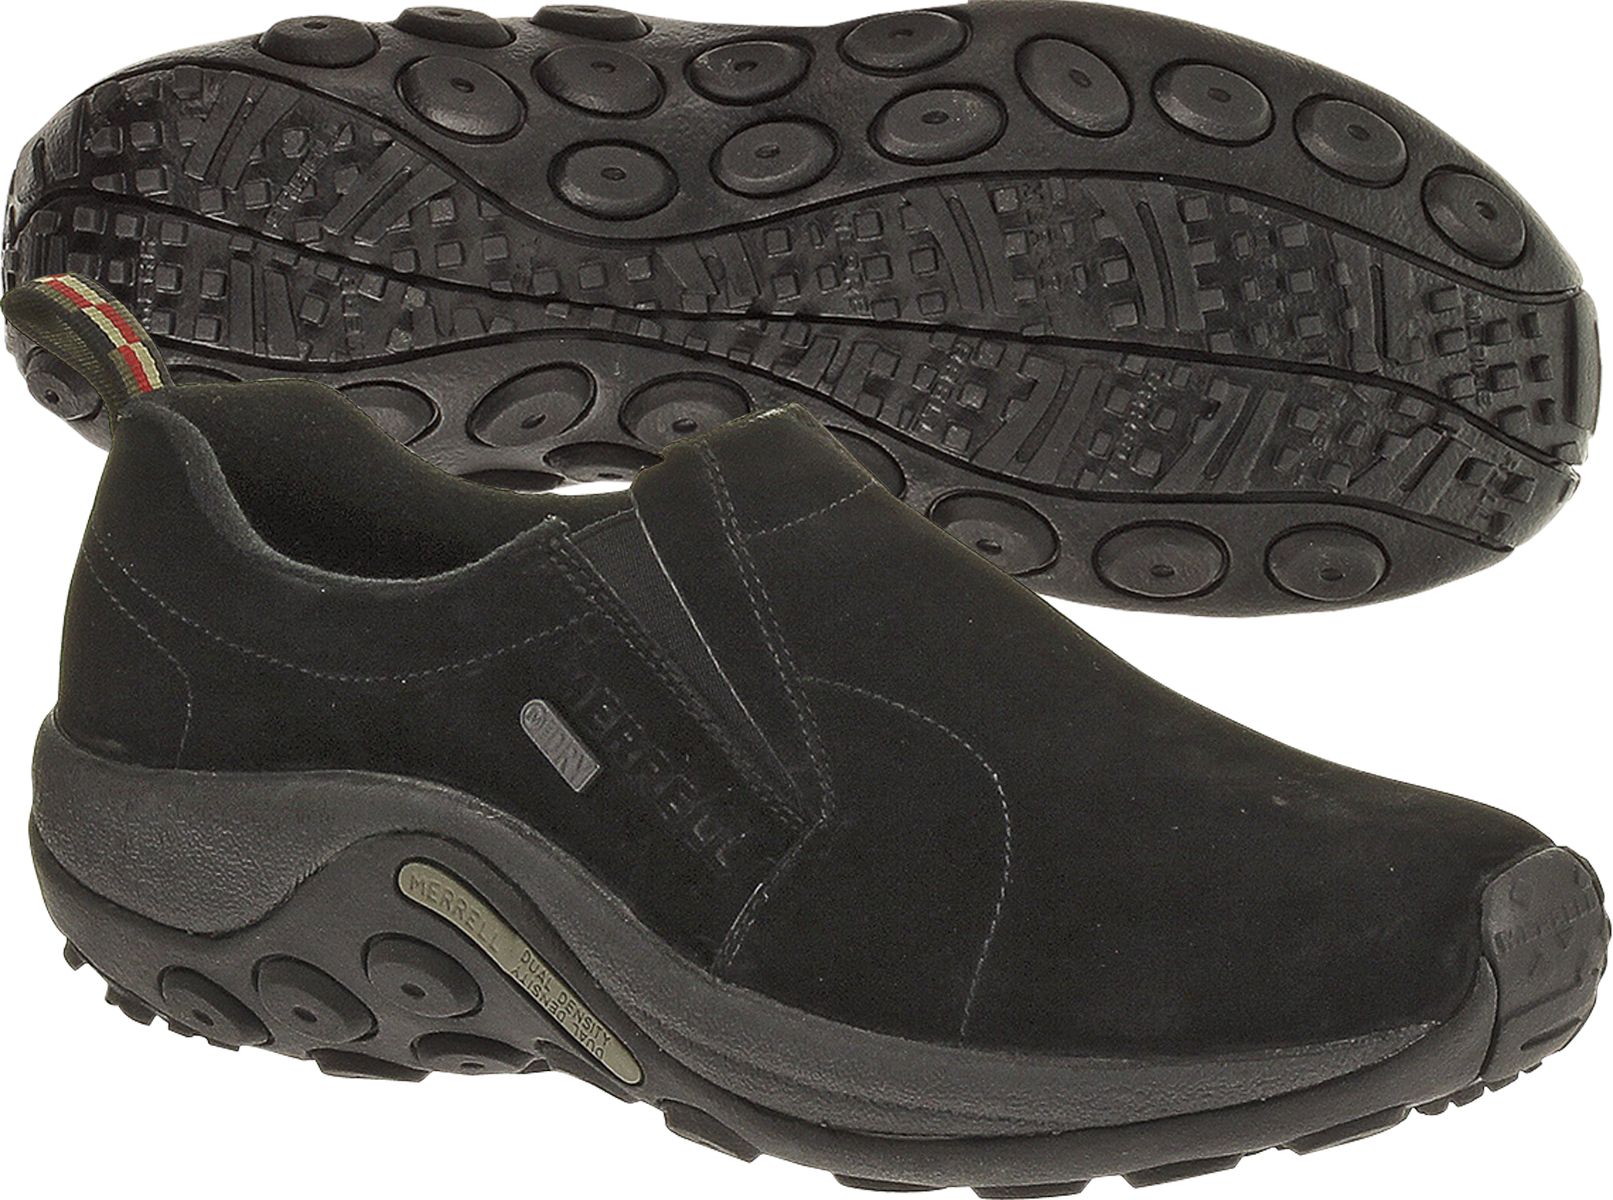 waterproof casual shoes mens